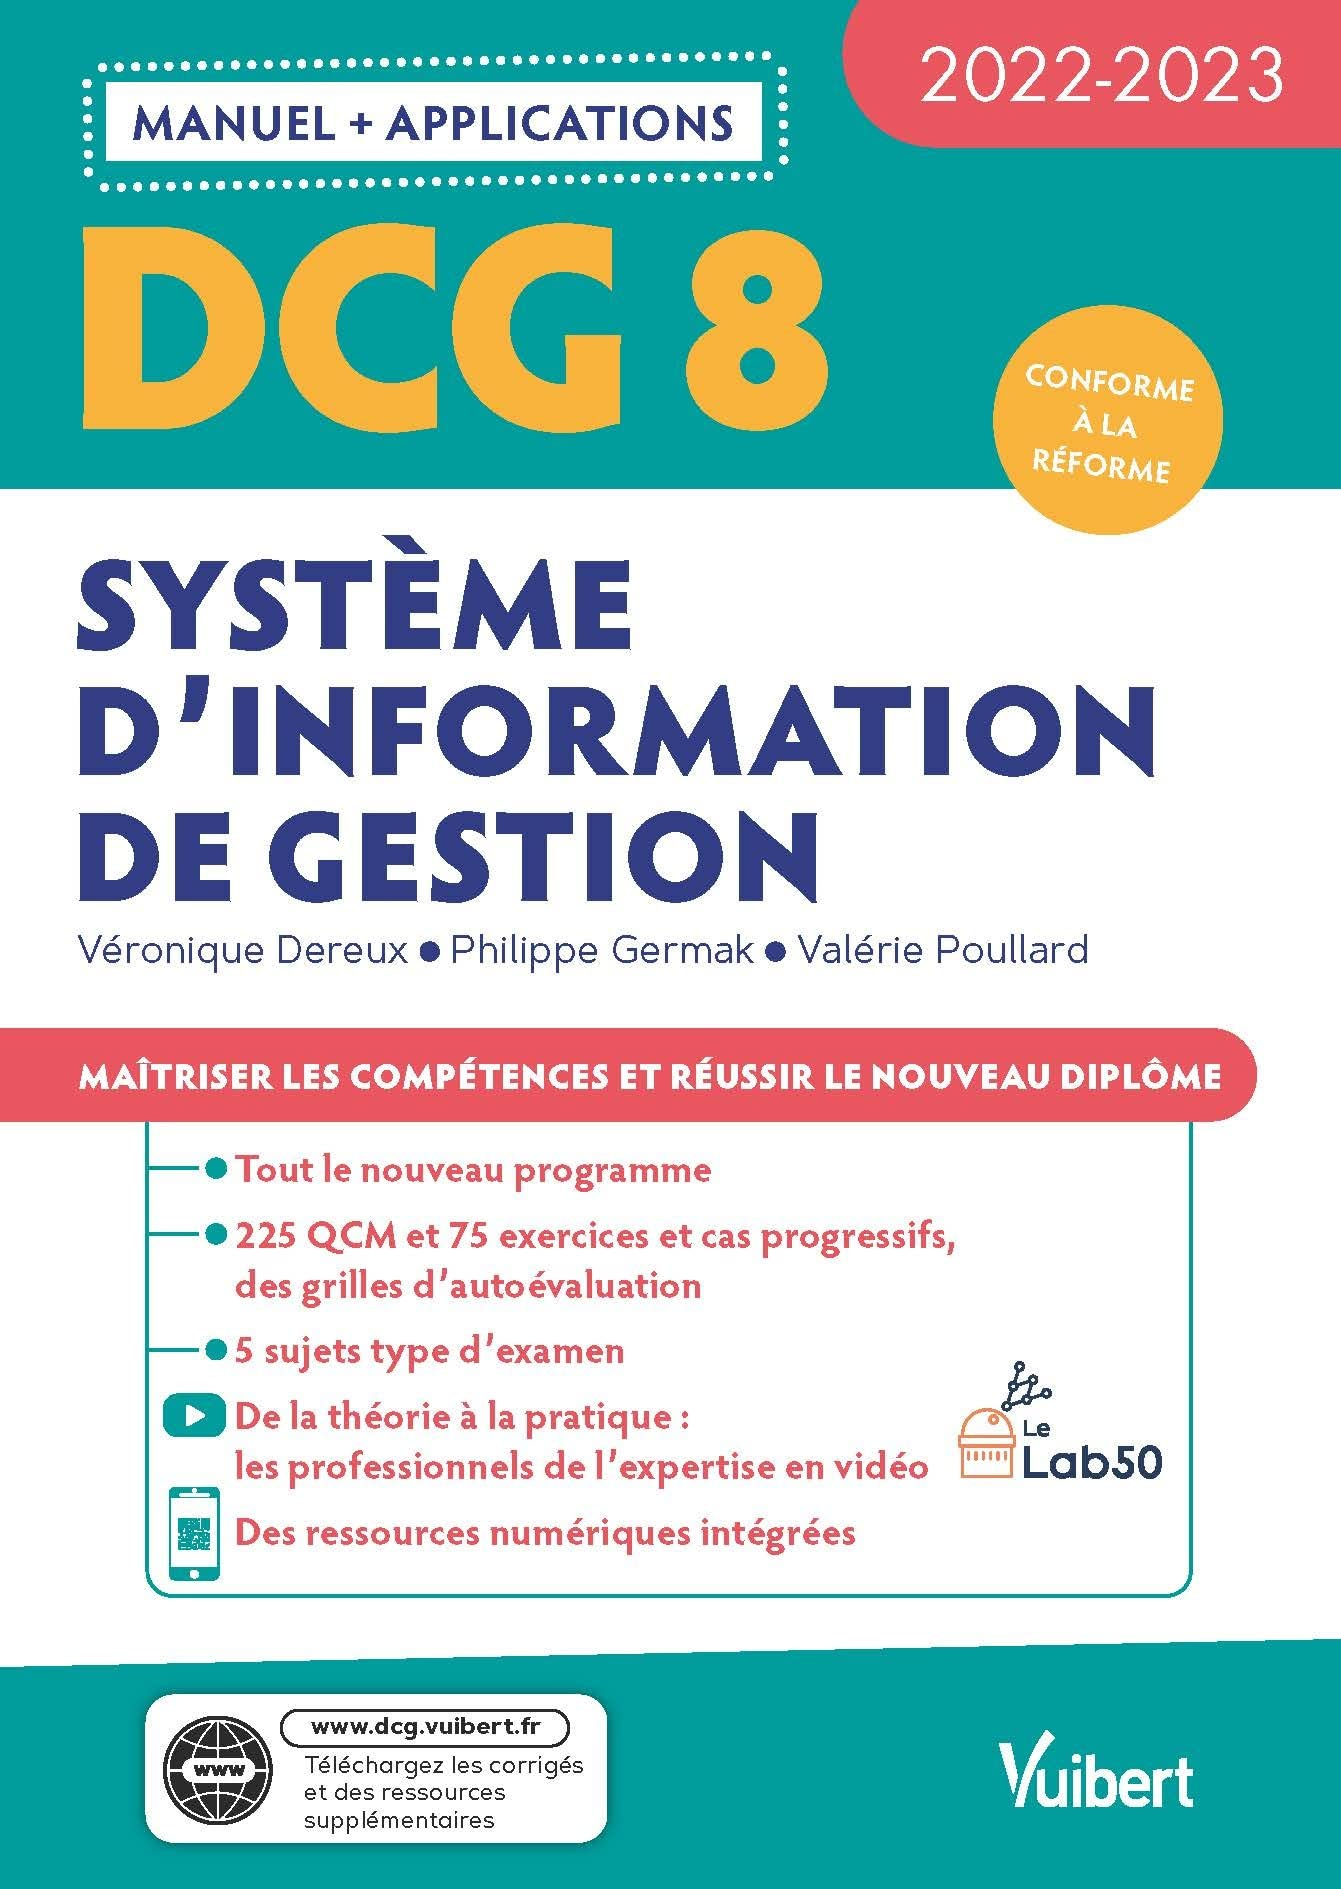 DCG 8, système d'information de gestion : manuel + applications : conforme à la réforme, 2022-2023